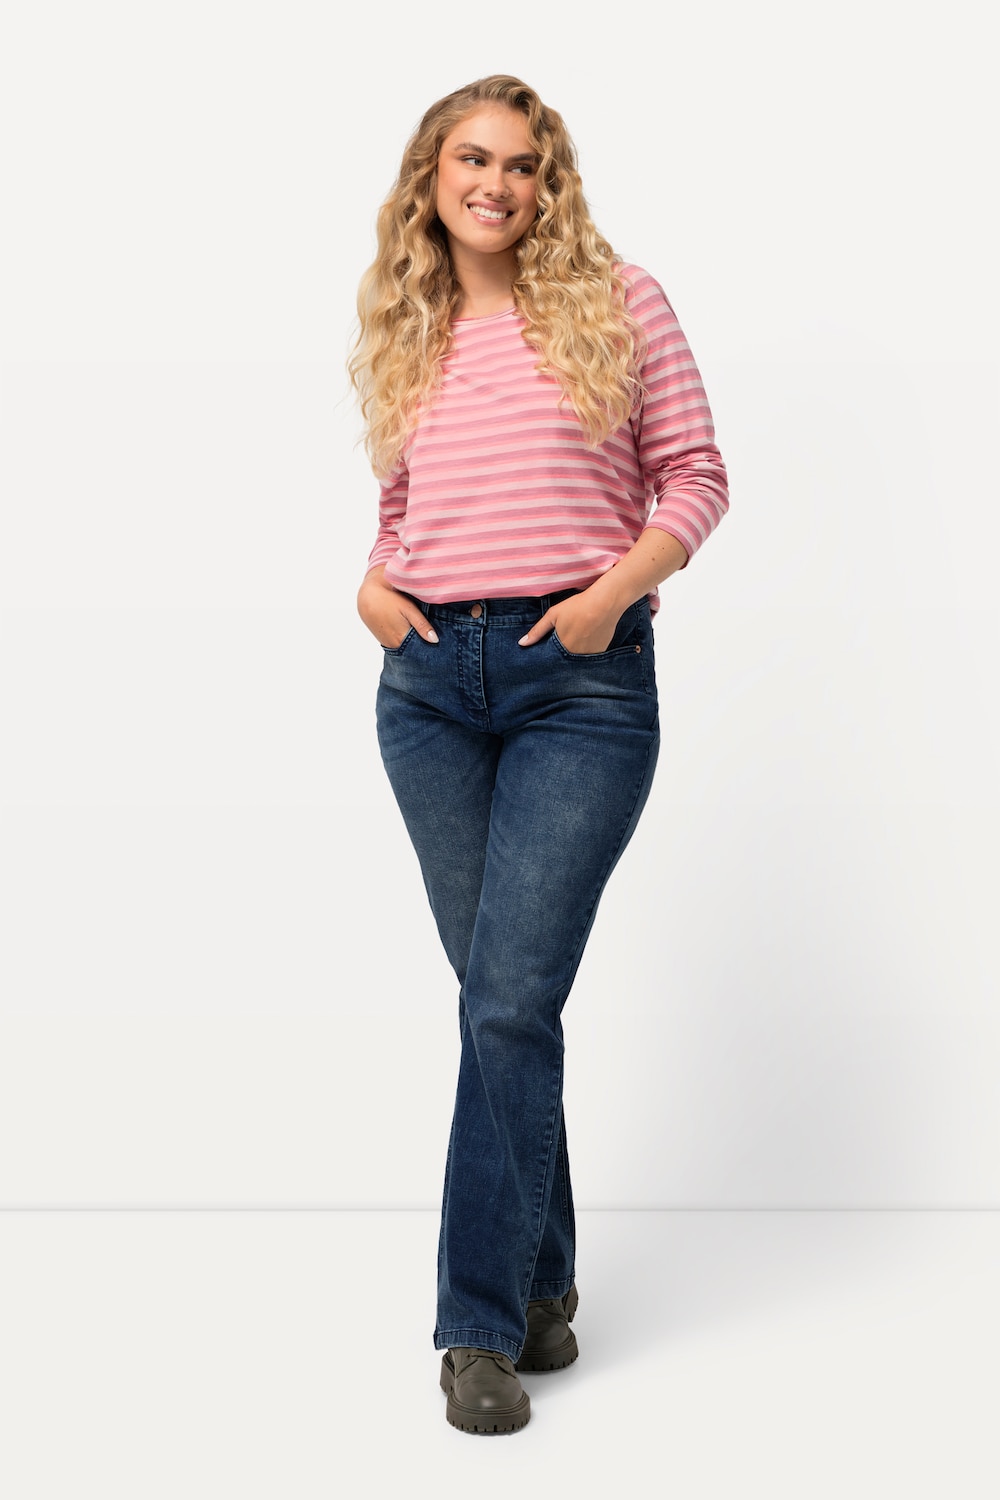 Große Größen Jeans Mandy, Damen, blau, Größe: 112, Baumwolle/Viskose/Polyester, Ulla Popken von Ulla Popken